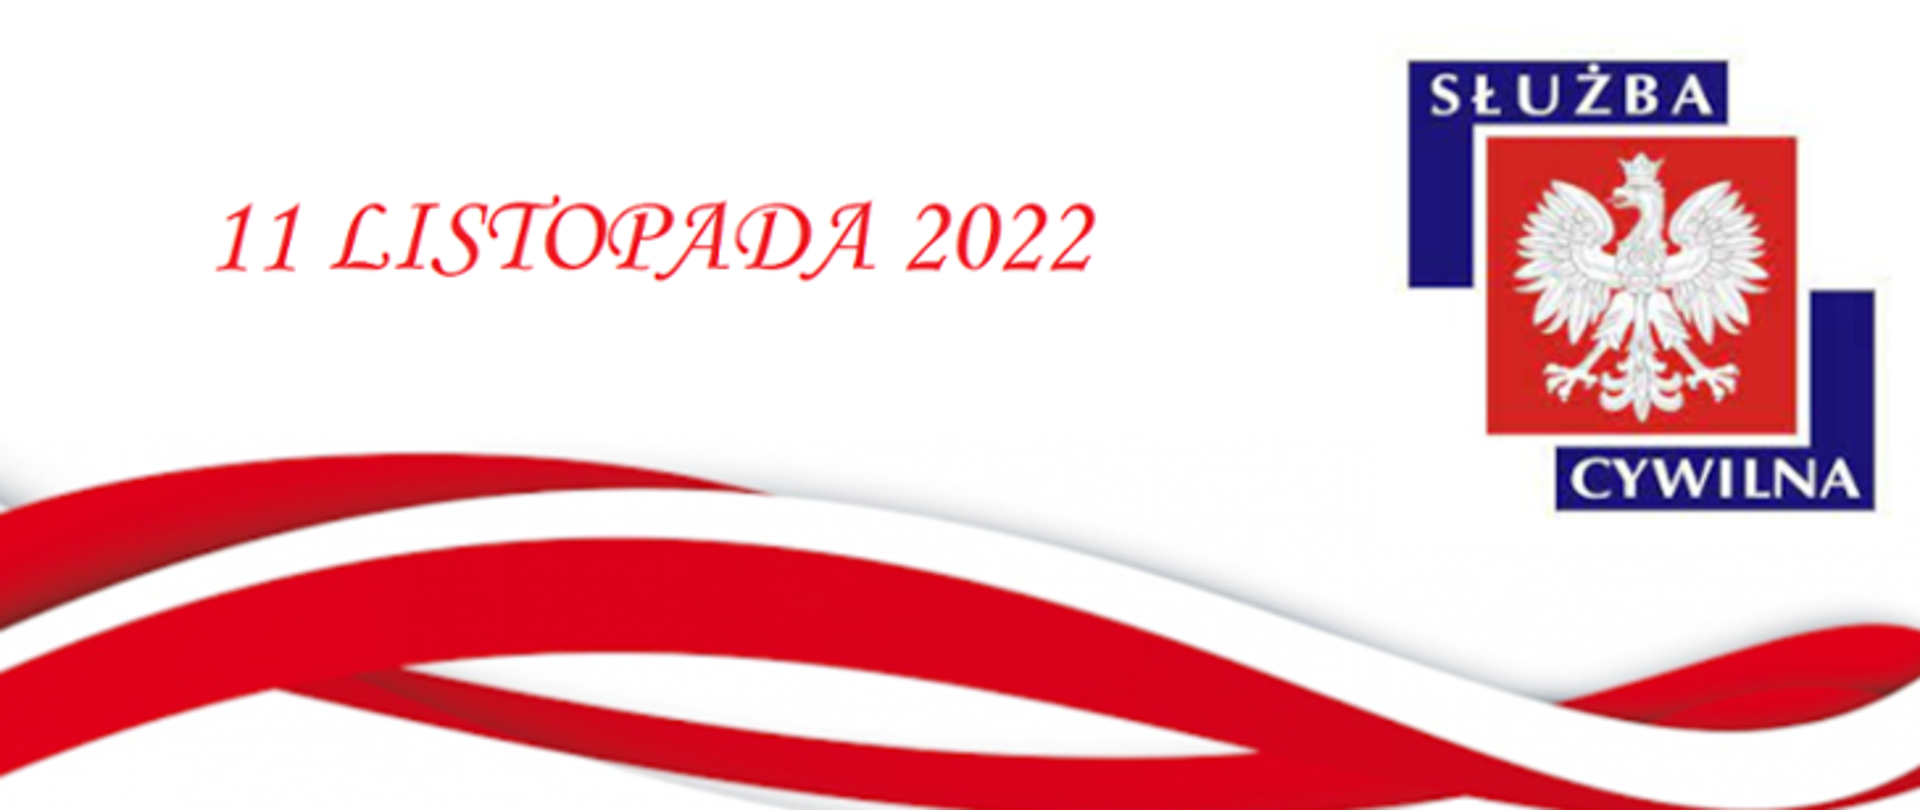 baner z biało czerwoną wstęgą na dole, w prawym górnym roku na czderwonym tle orzeł oraz napis służba cywilna w lewym rogu napis 11 listopada 2022